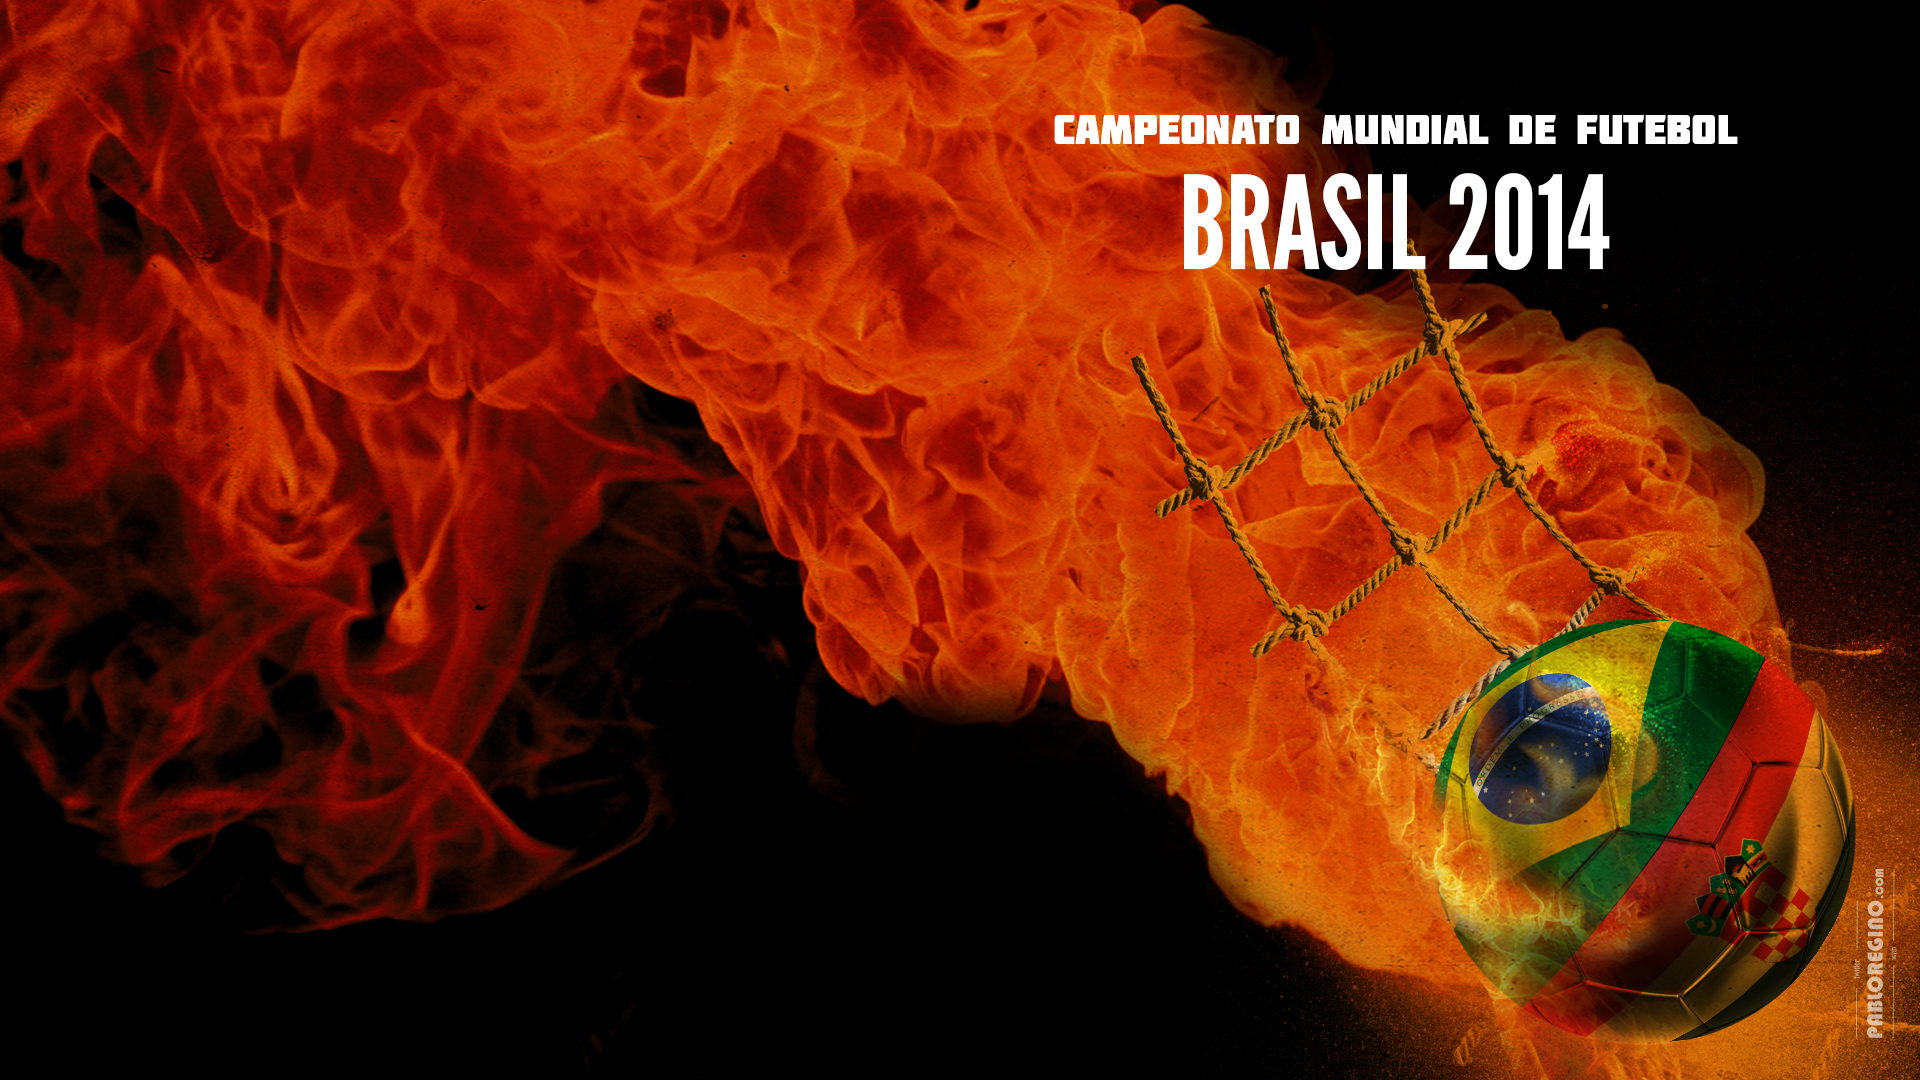 sports, fifa world cup brazil 2014, brasil 2014, fifa, fifa world cup